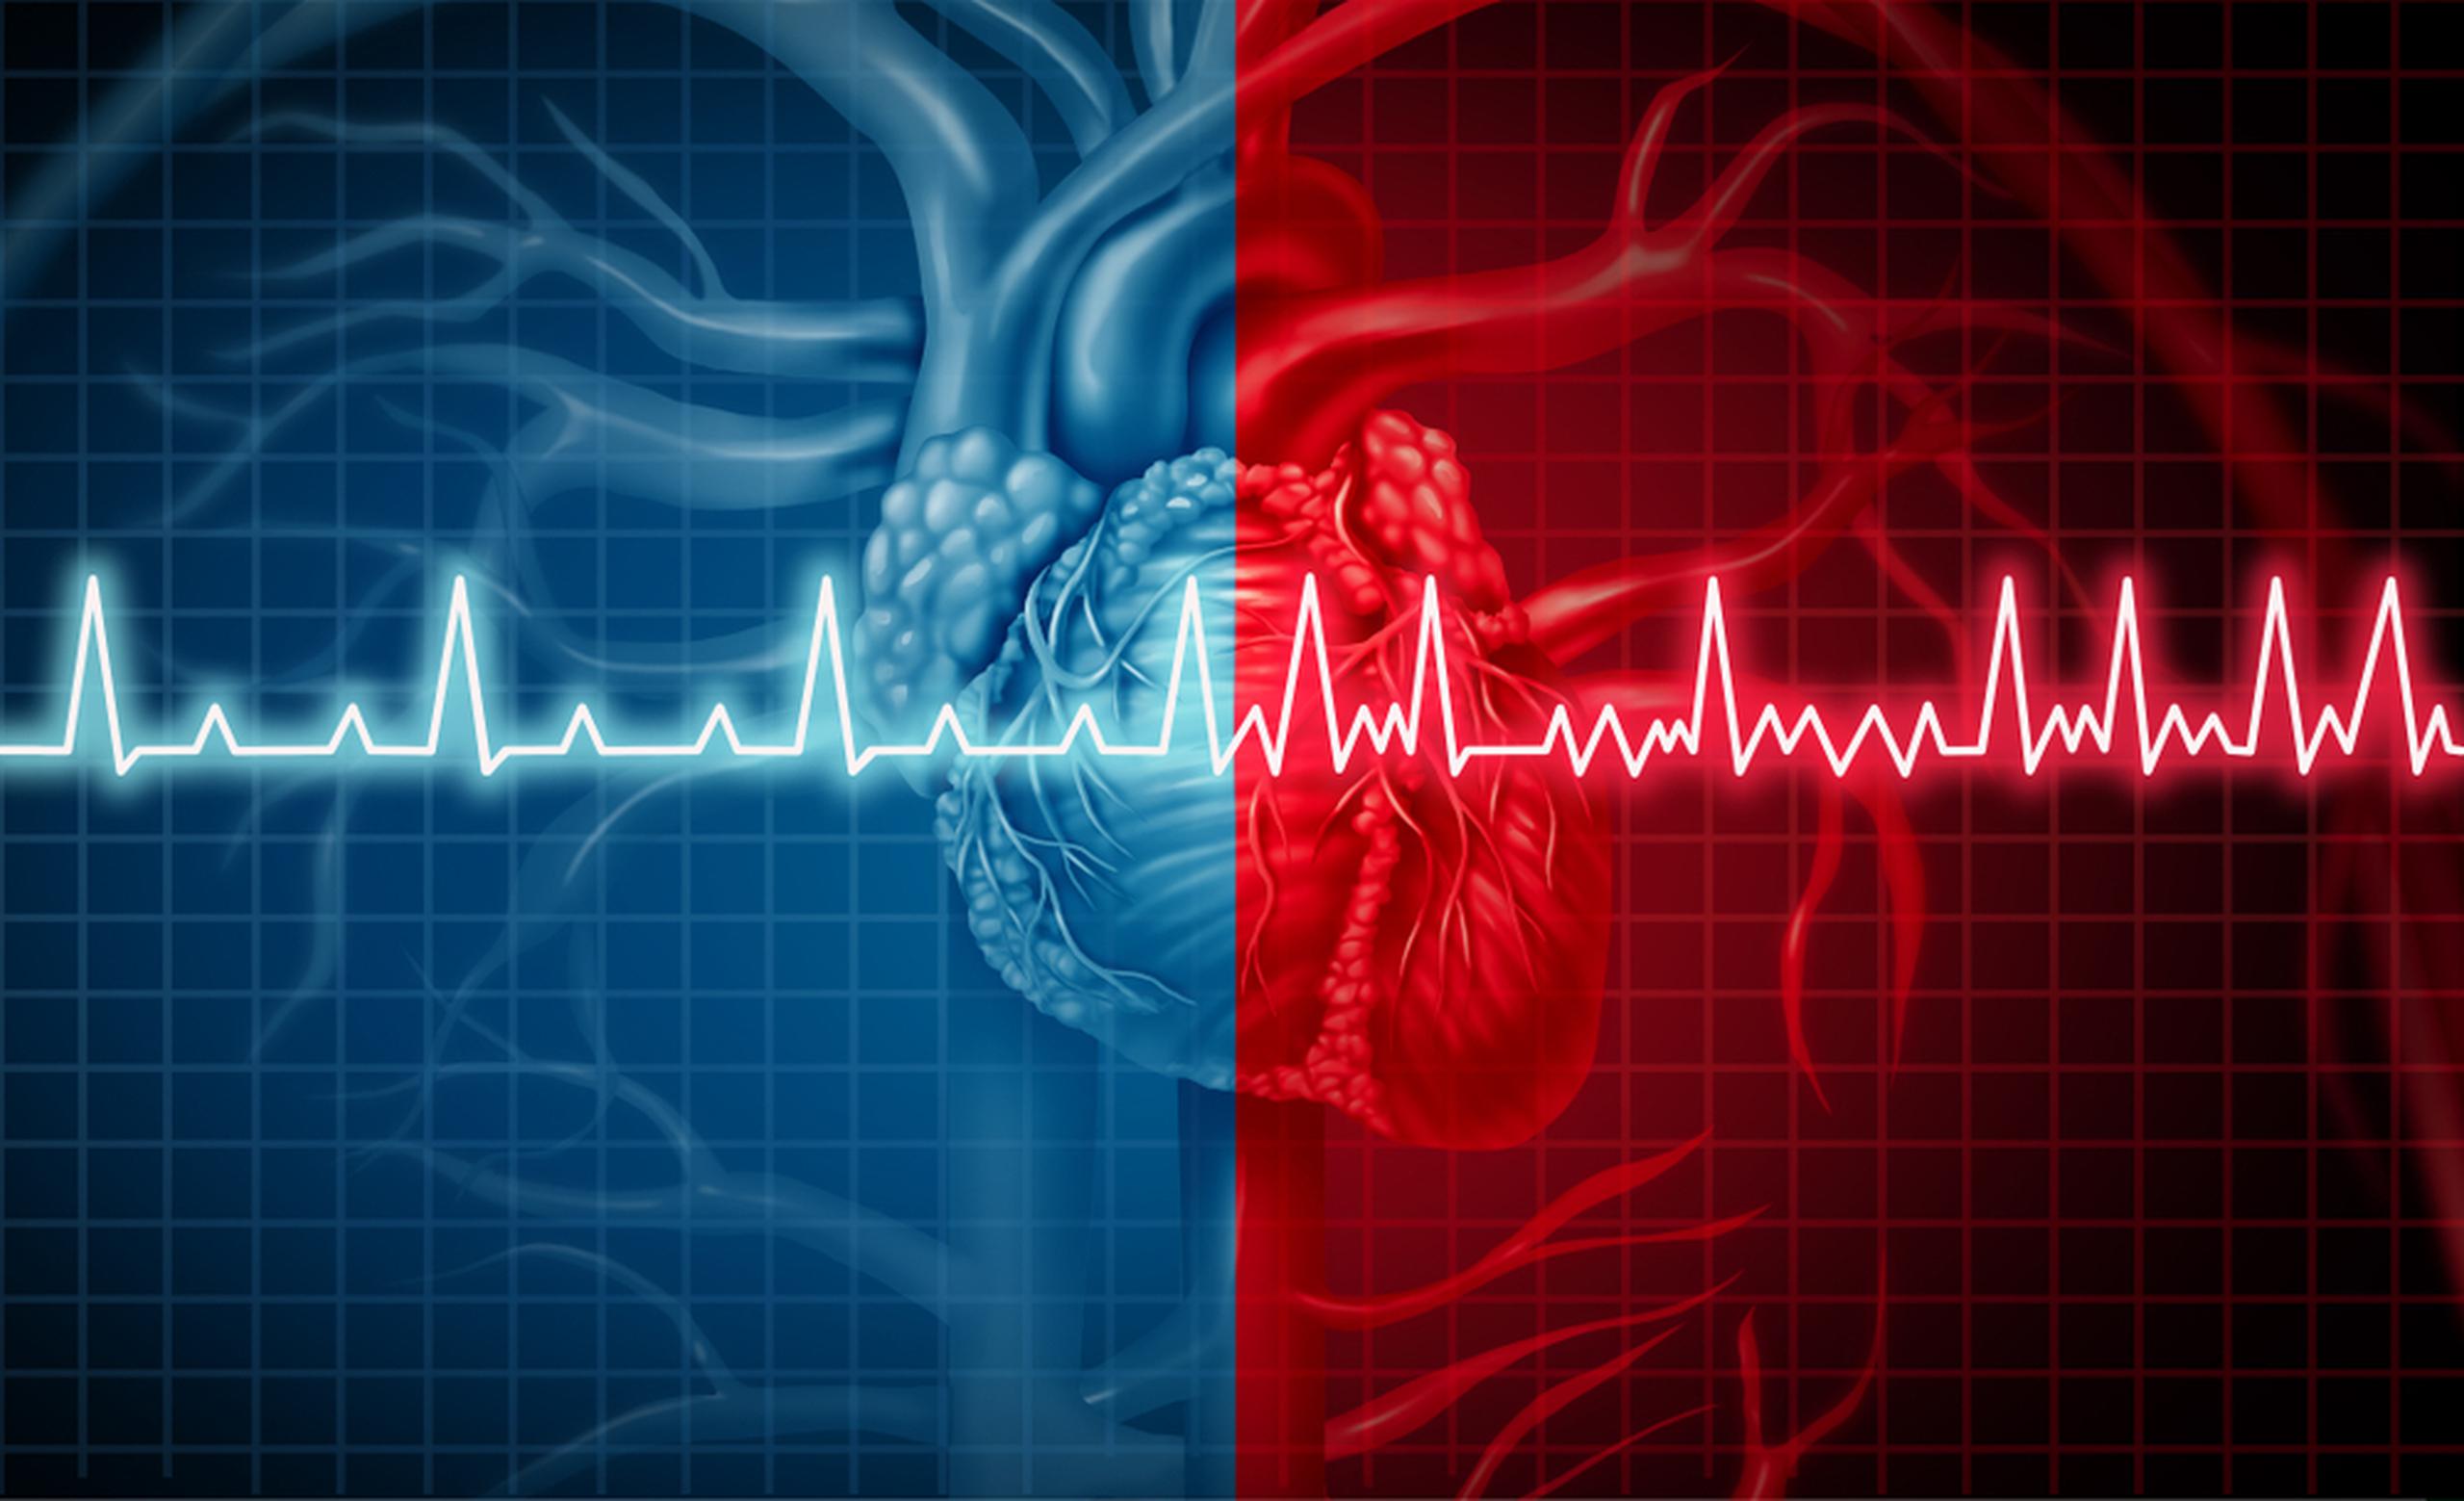 Los factores de riesgo para la fibrilación auricular son los mismos que para las condiciones cardiovasculares.